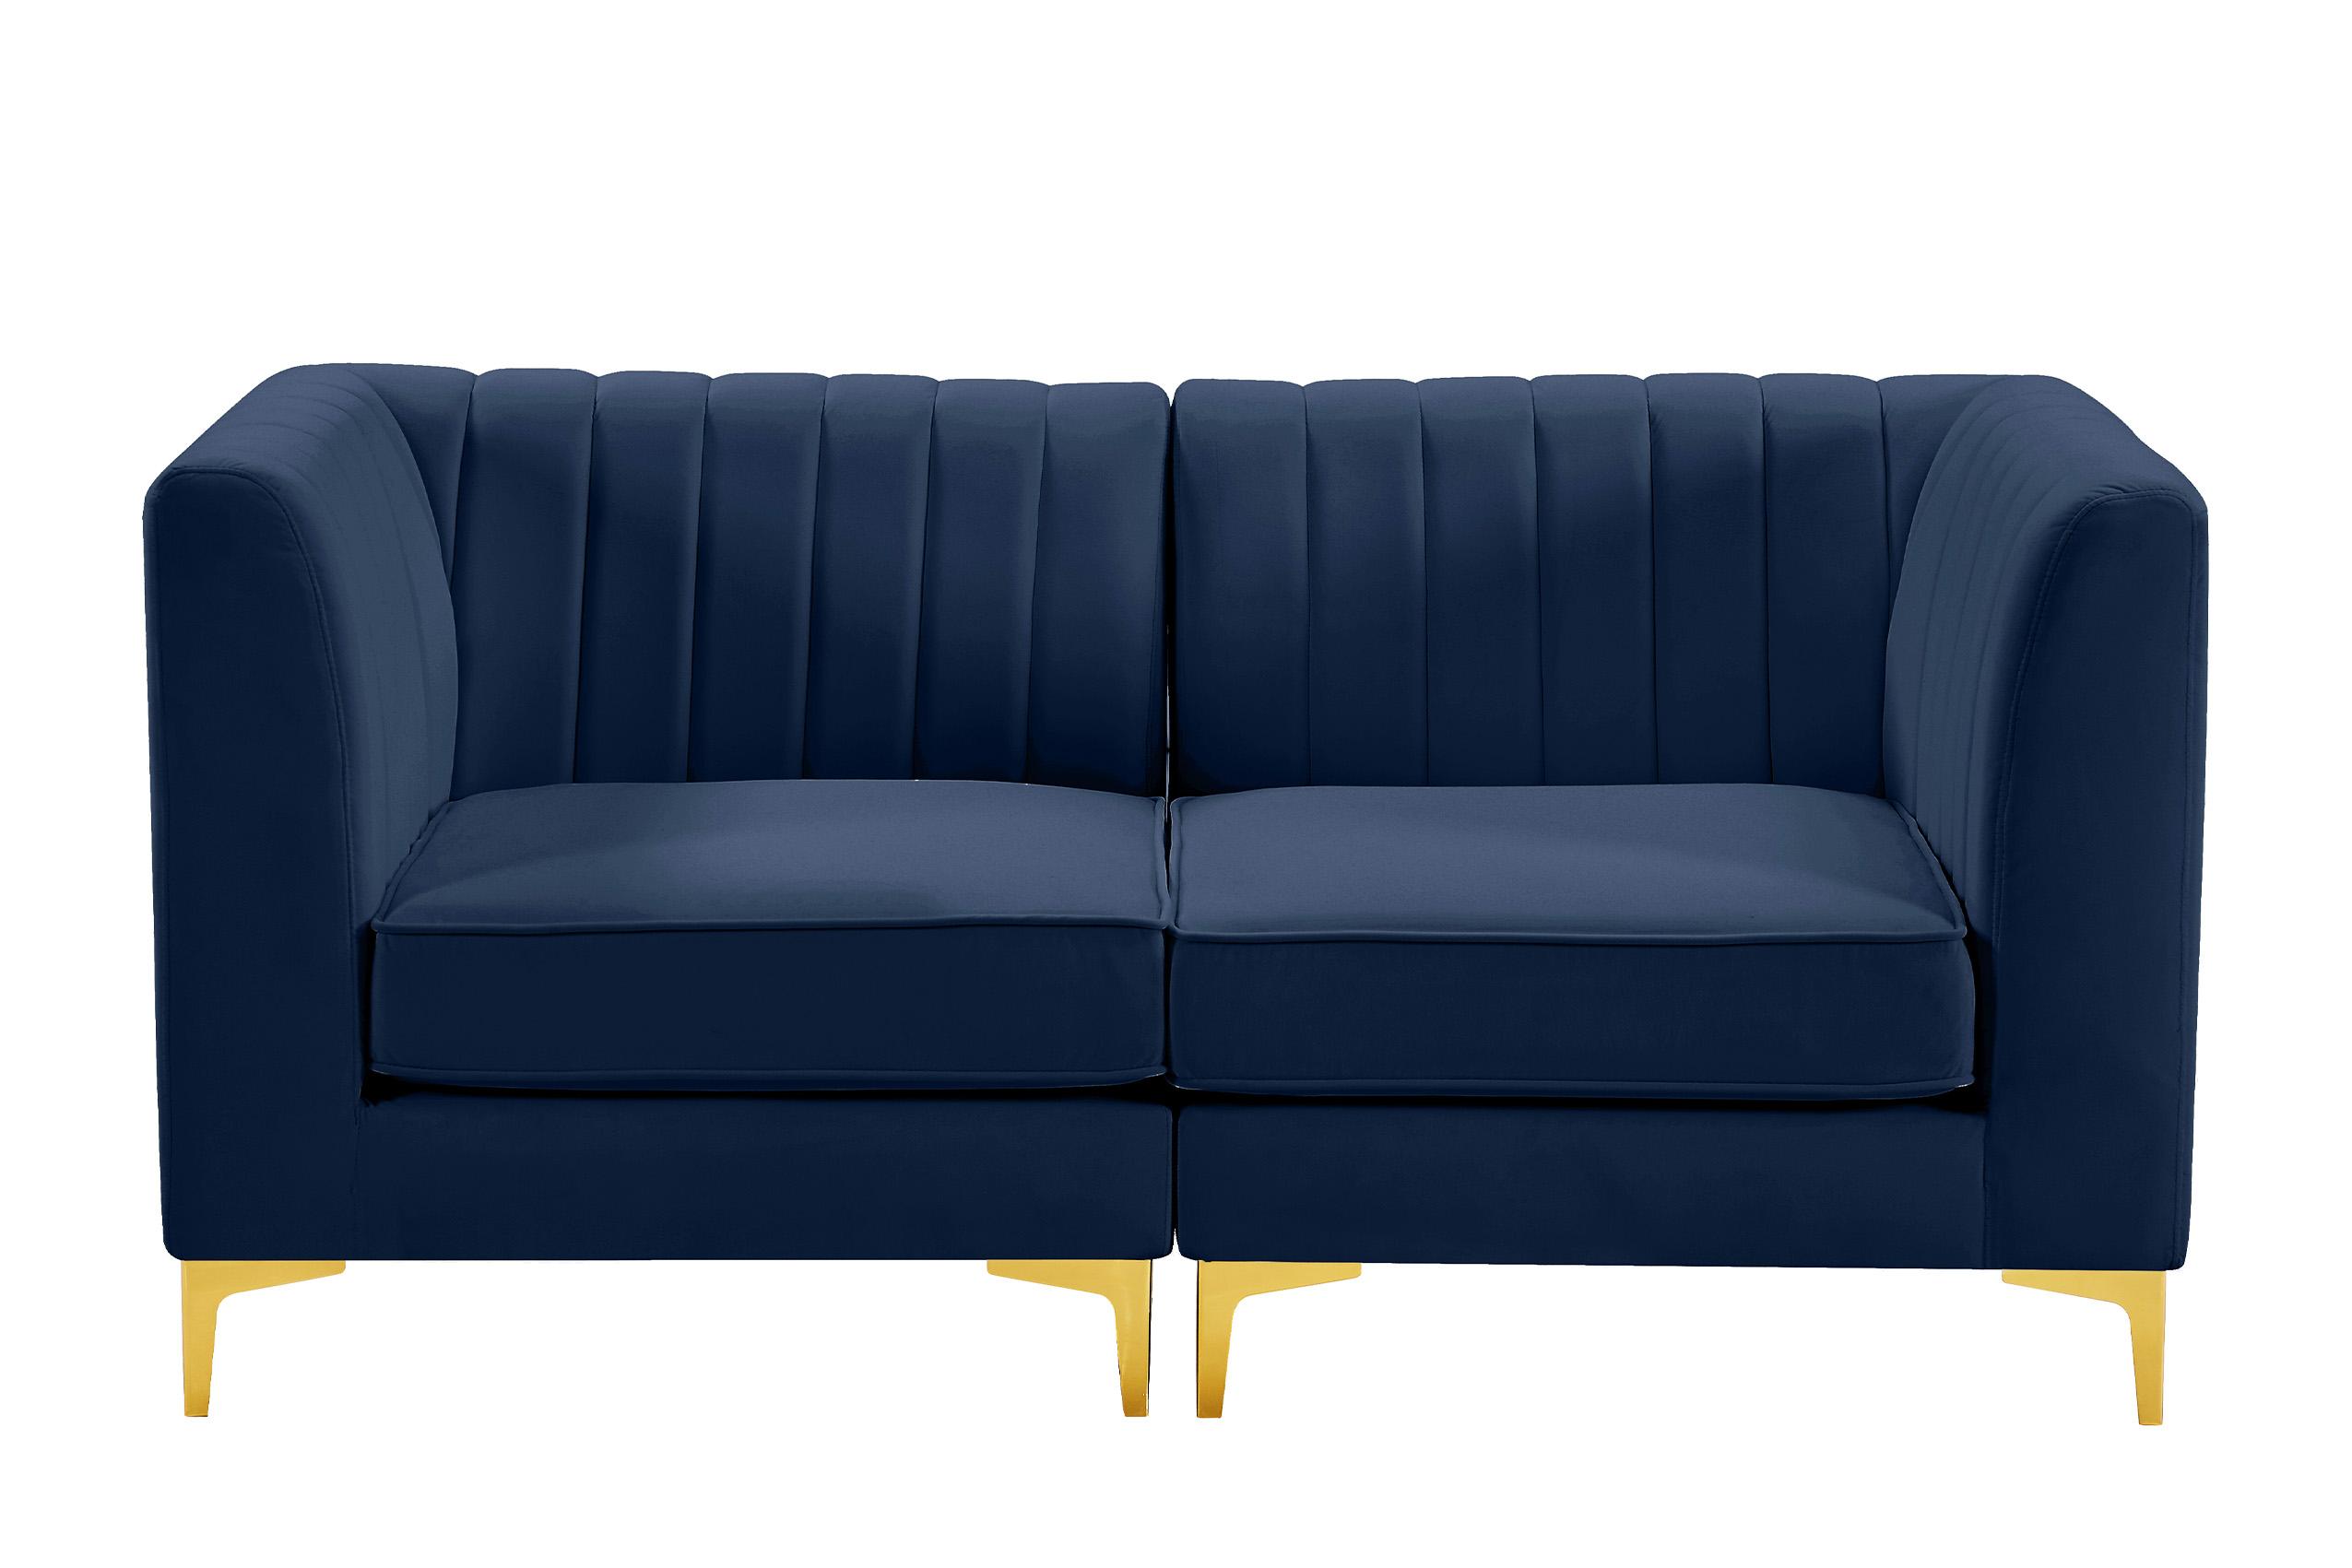 

    
Meridian Furniture ALINA 604Navy-S67 Modular Sectional Sofa Navy 604Navy-S67
